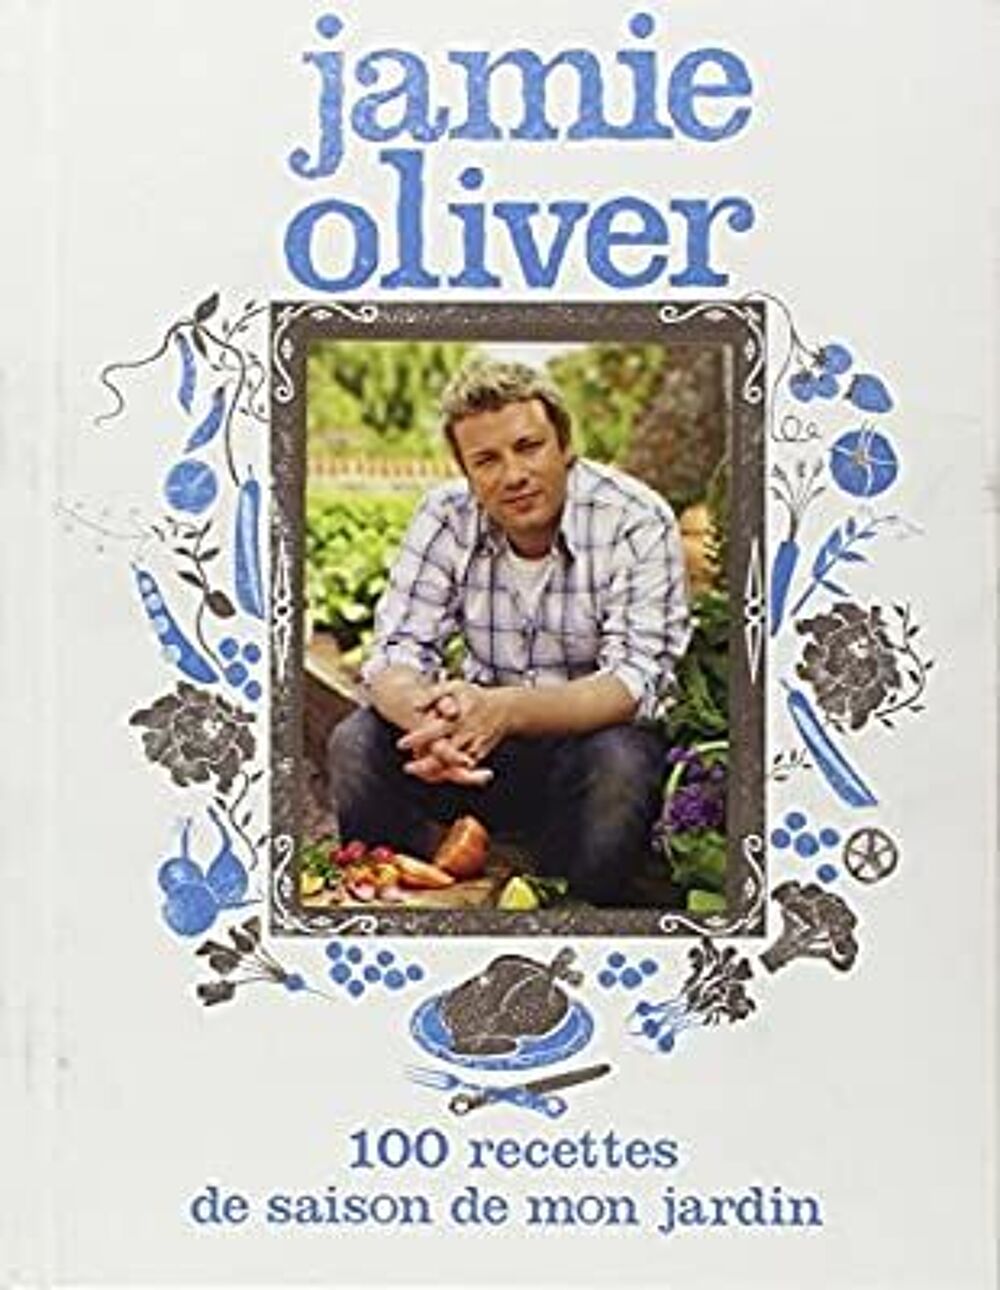 100 recettes de saison de mon jardin
Jamie Oliver Livres et BD